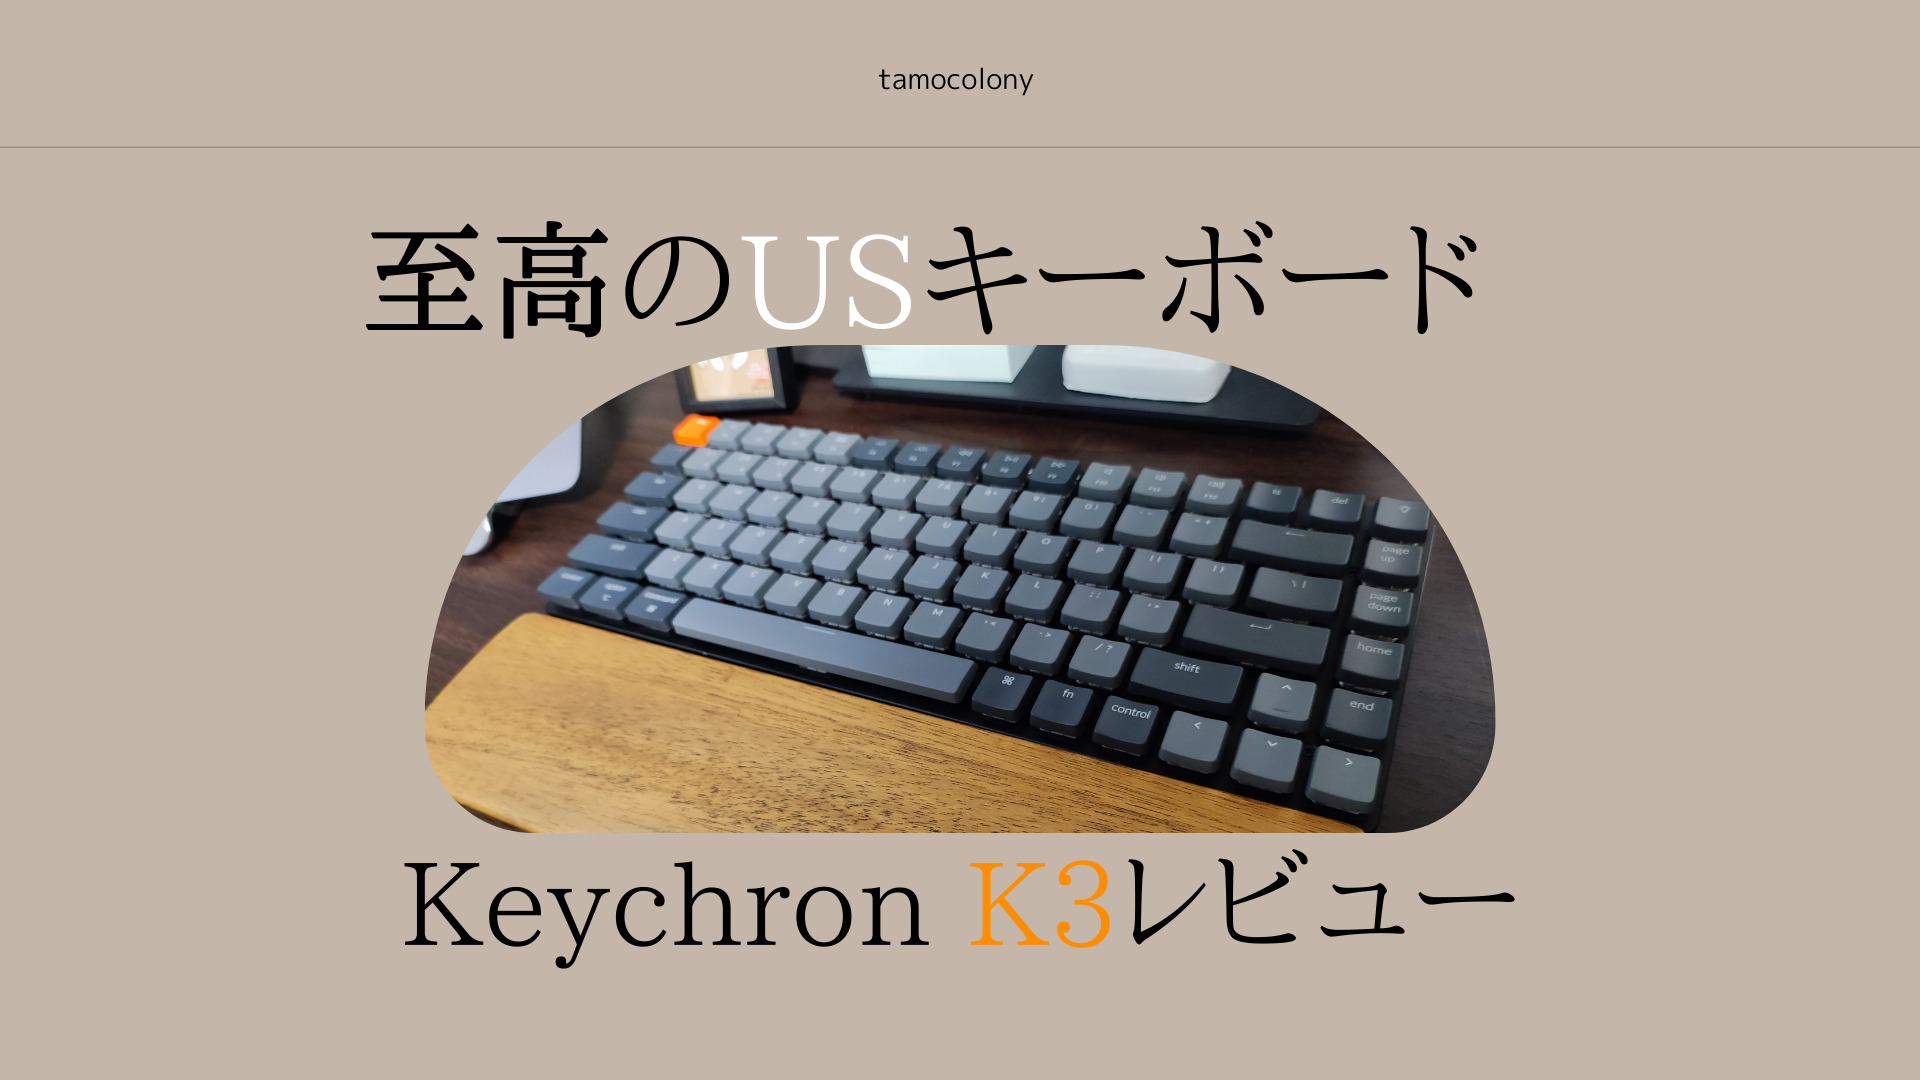 至高のUSキーボード「Keychron K3」使用レビュー | tamocolony